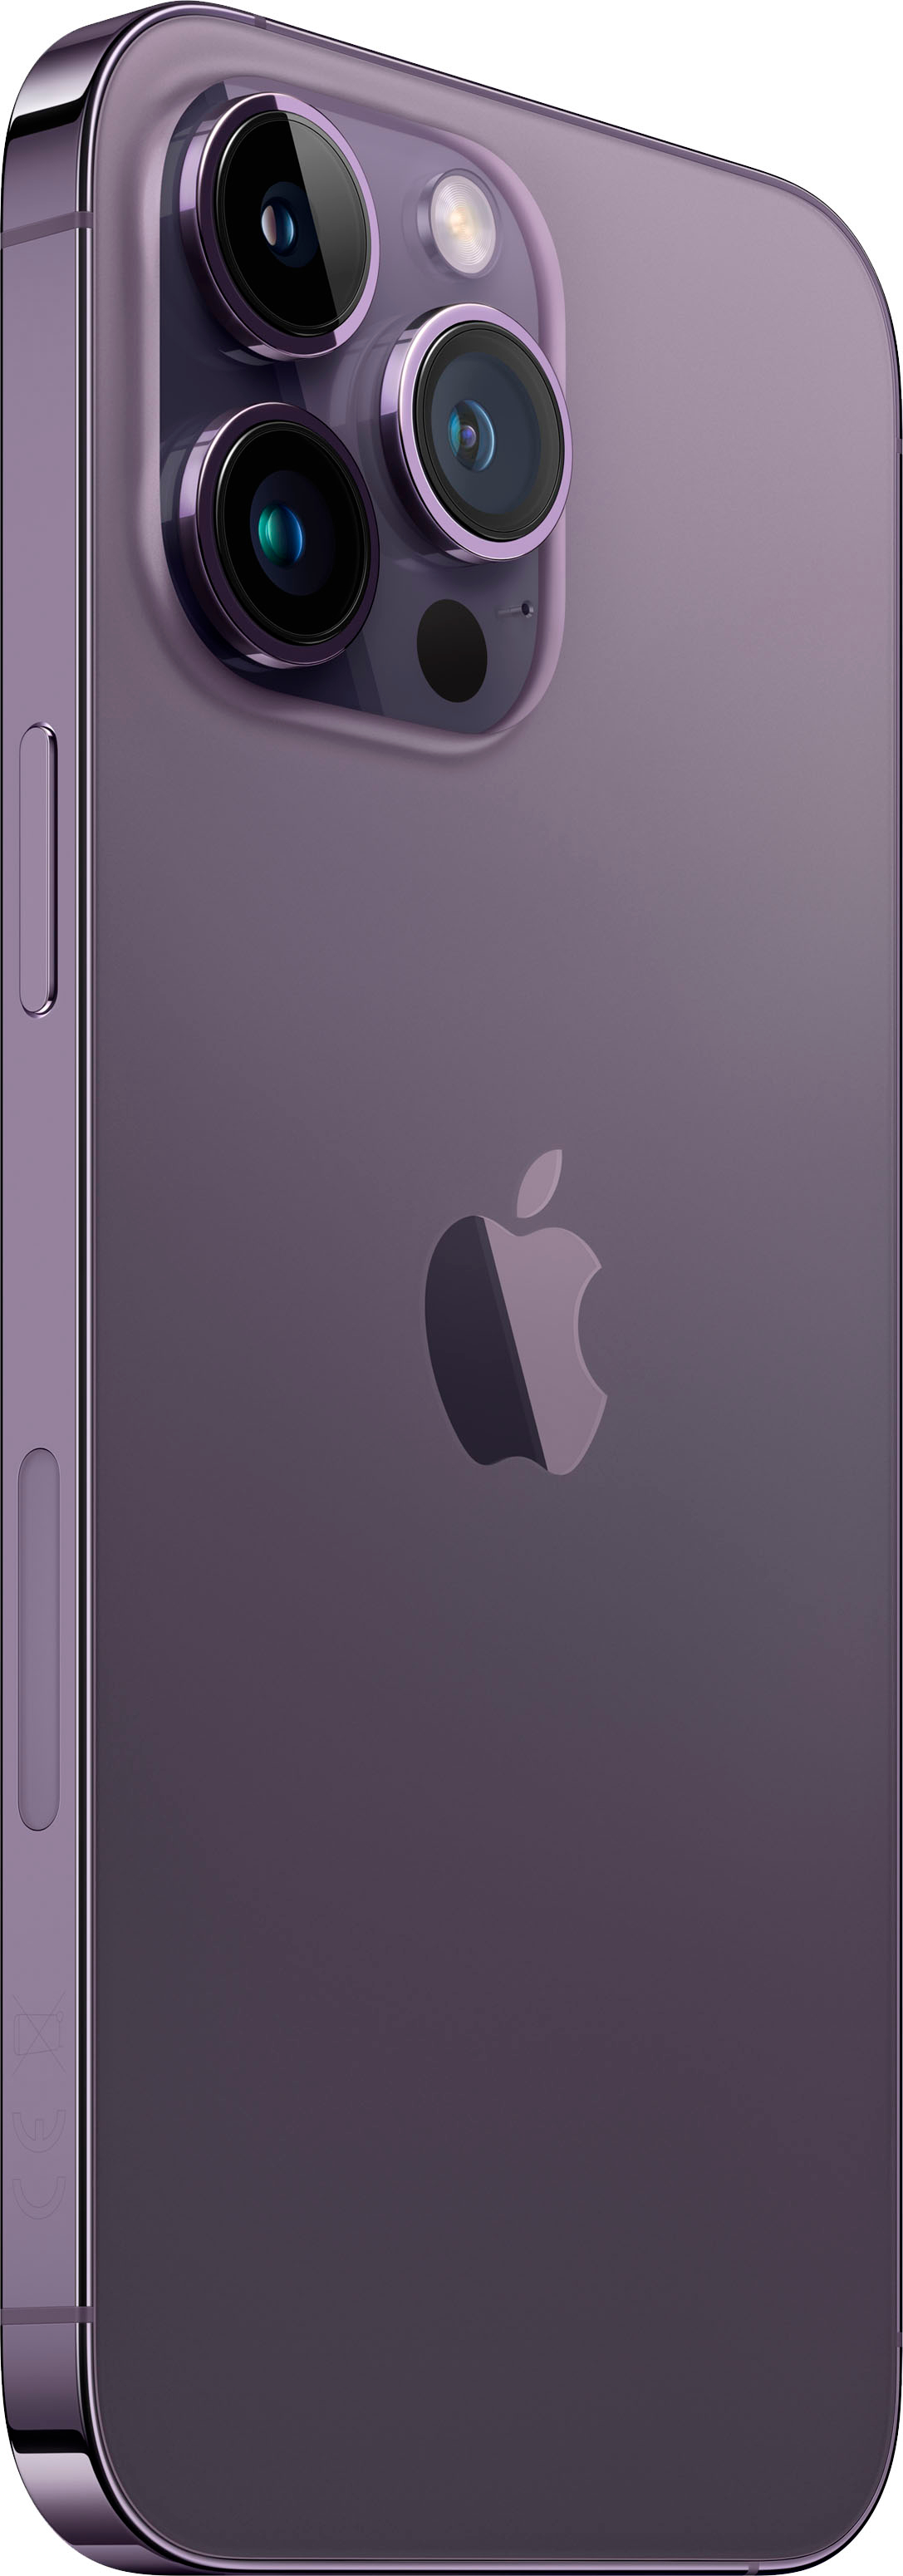 Apple iPhone 14 Pro Max 128GB Deep Purple (Verizon) MQ8R3LL/A